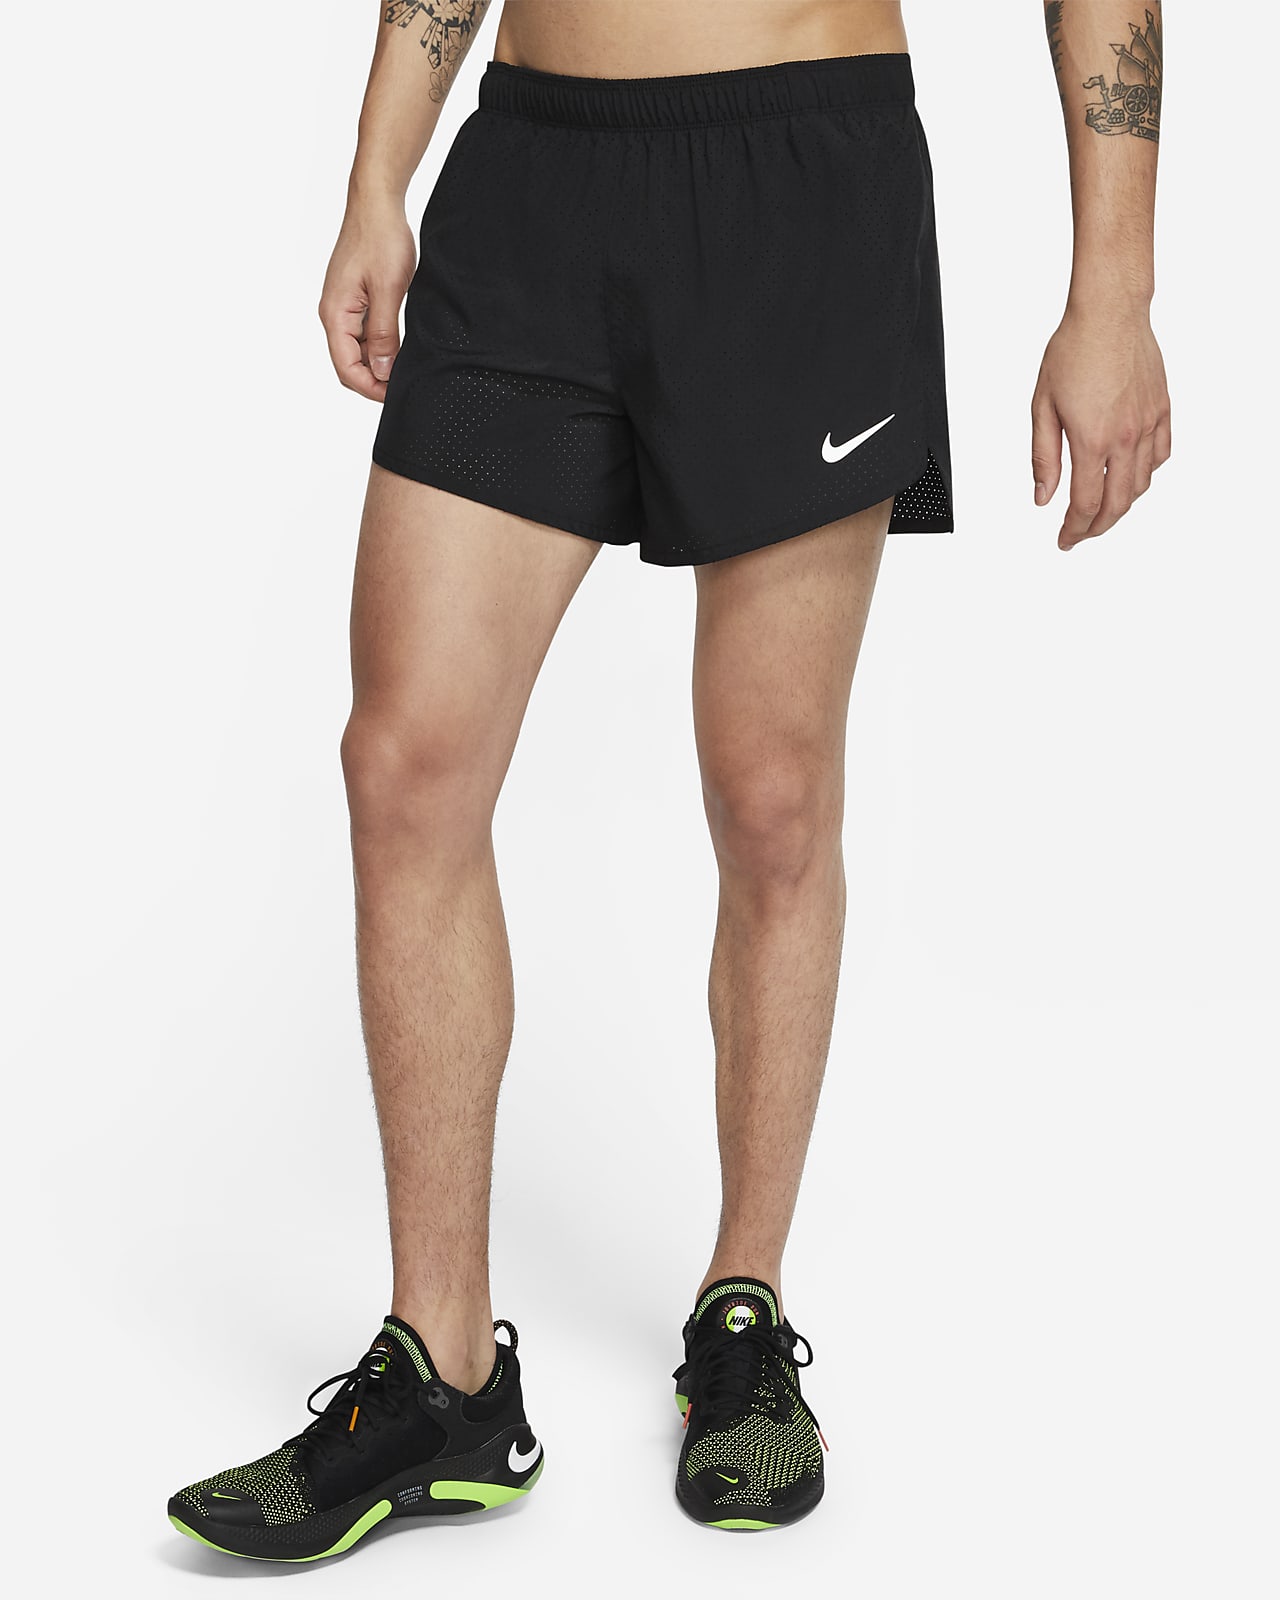 Nike Fast Pantalón corto competición 10 cm con forro - Hombre. ES